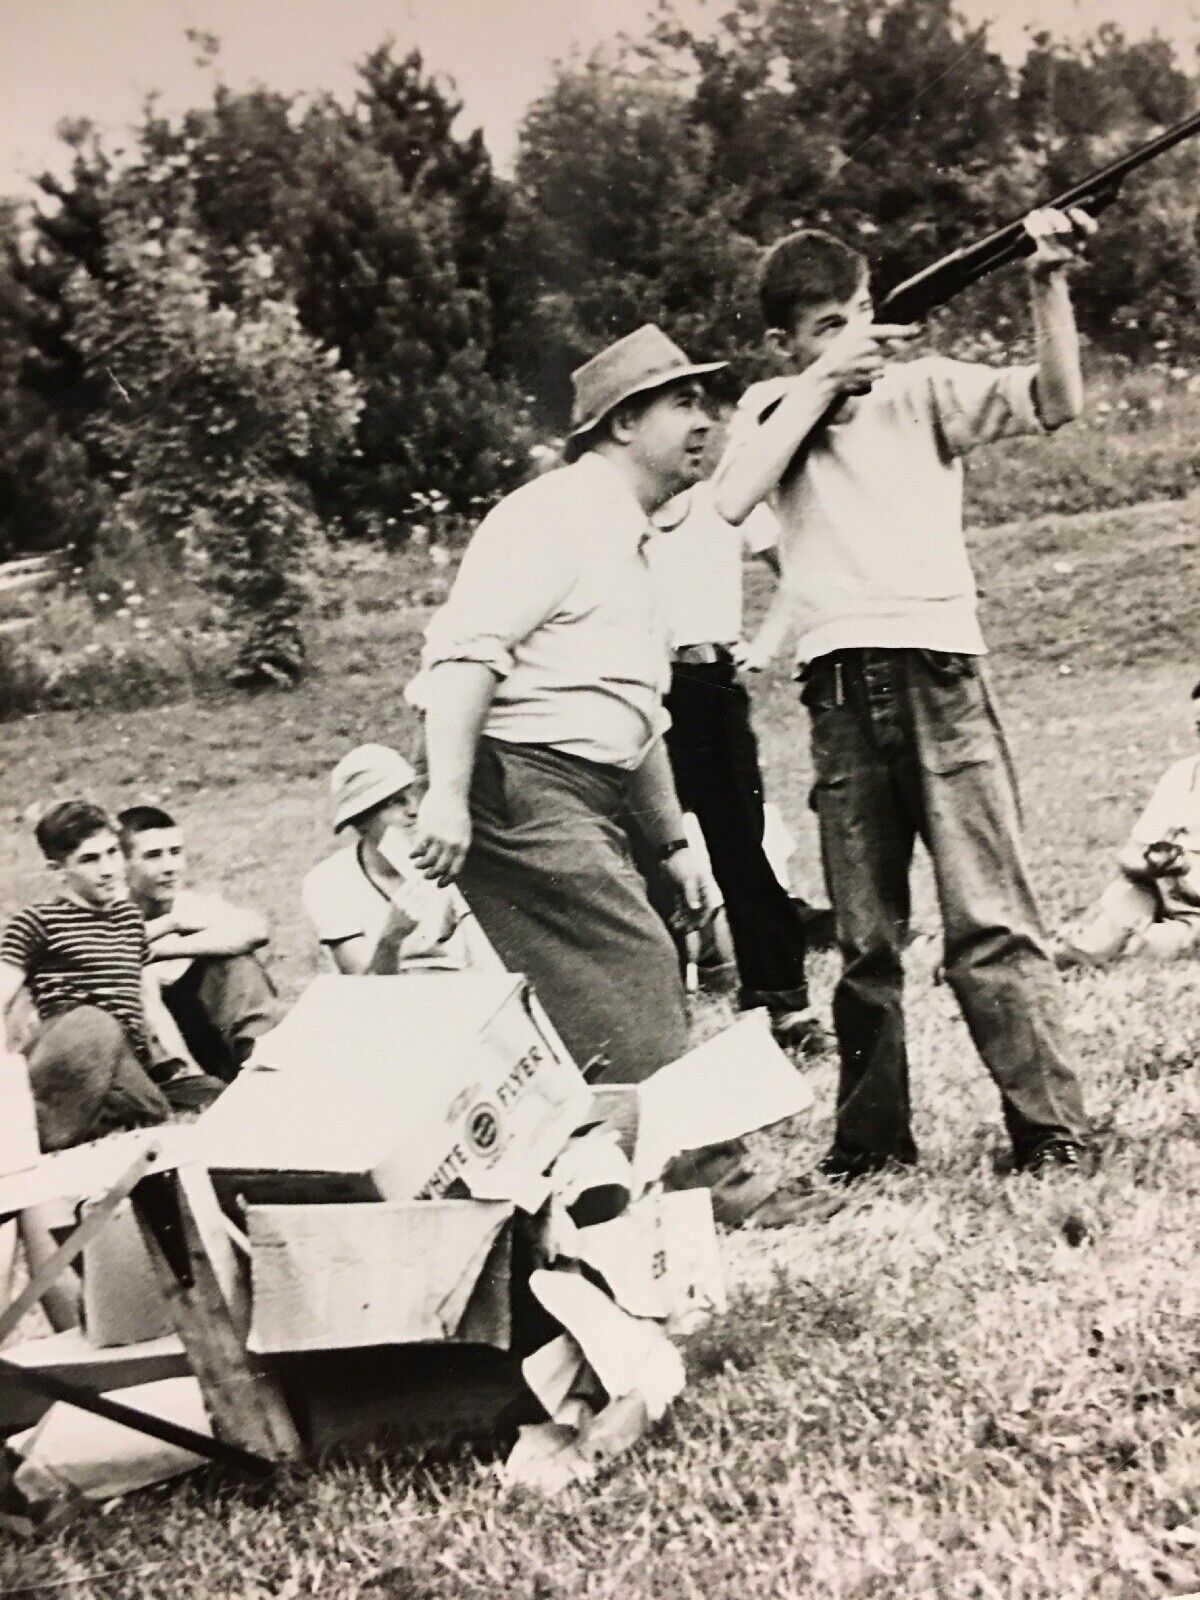 Vintage Black & White Photo 1950s Boys Shooting Practice Skeet Guns in Field